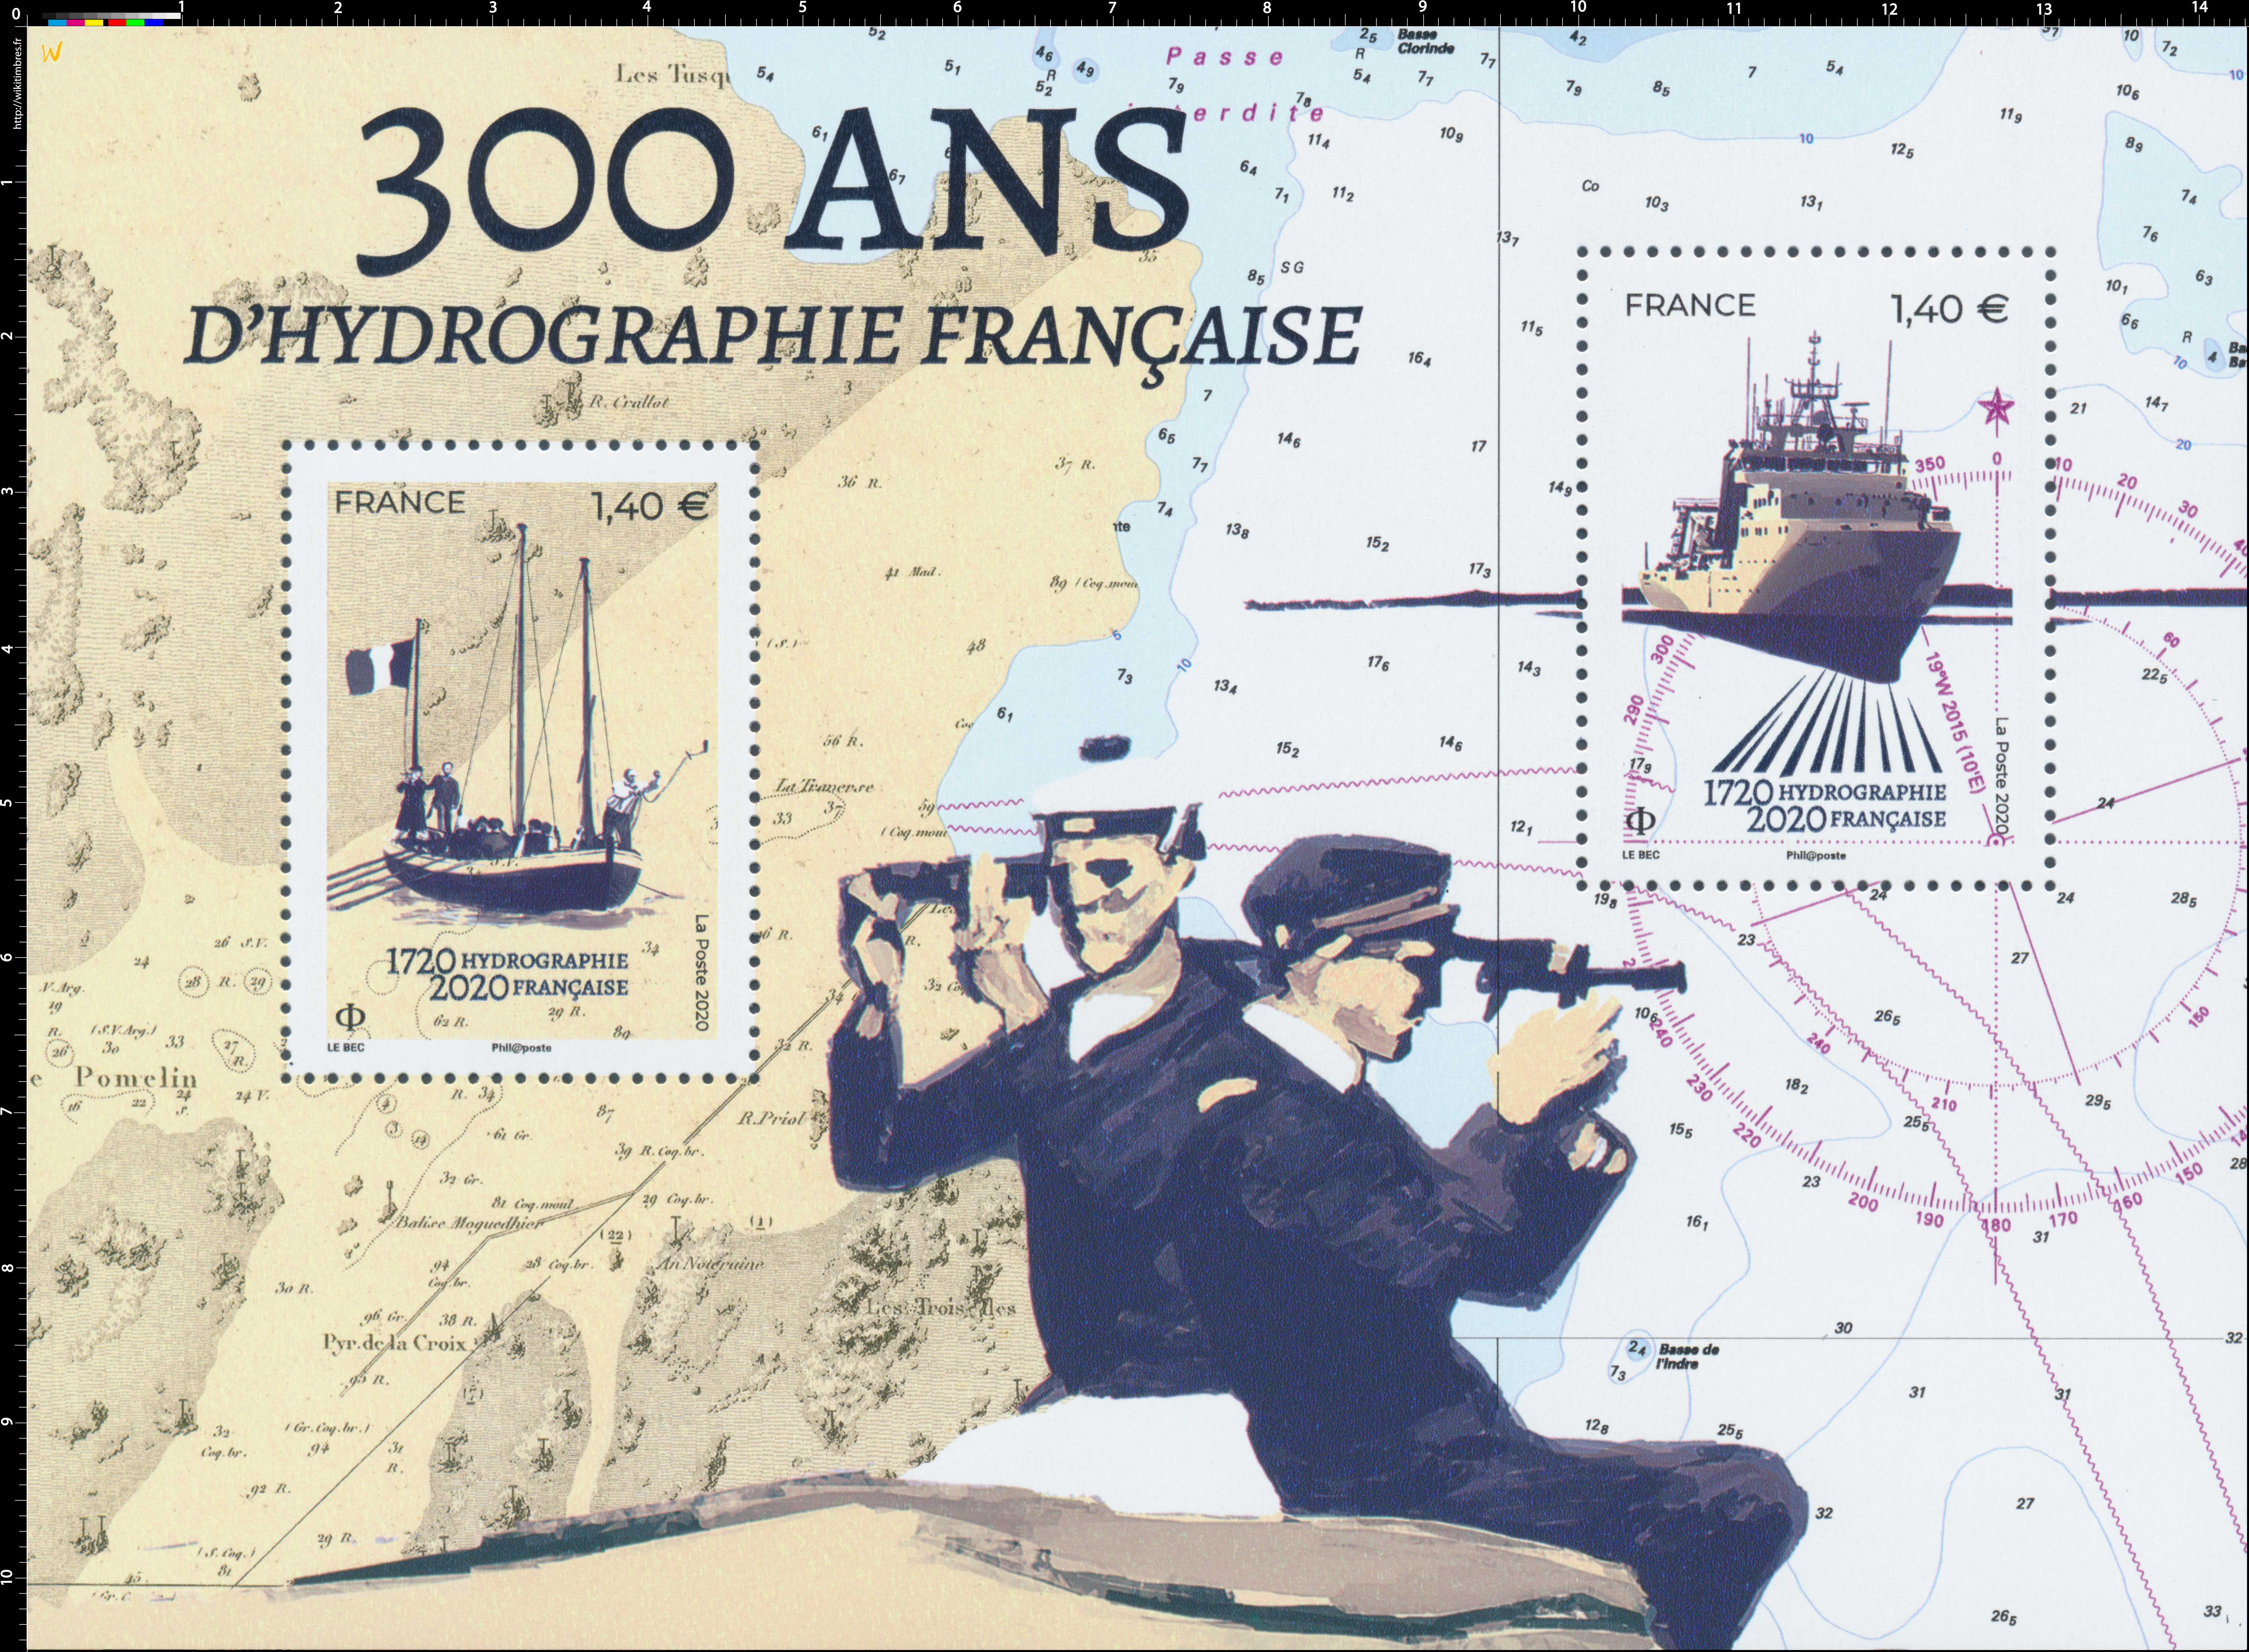 2020 300 ANS D'HYDROGRAPHIE FRANCAISE